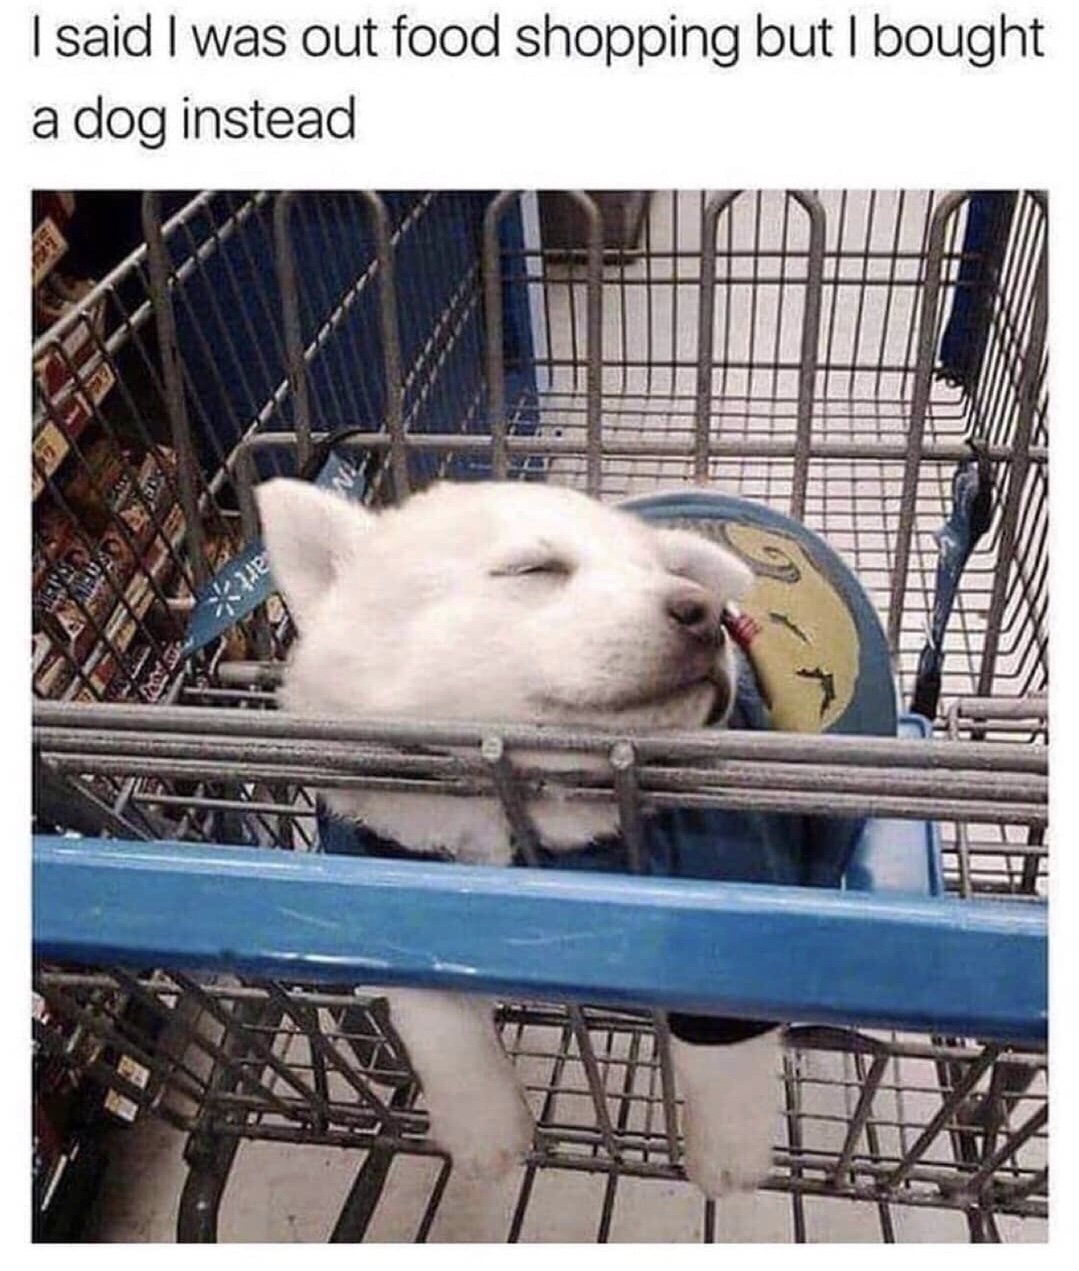 wento shopping got dog